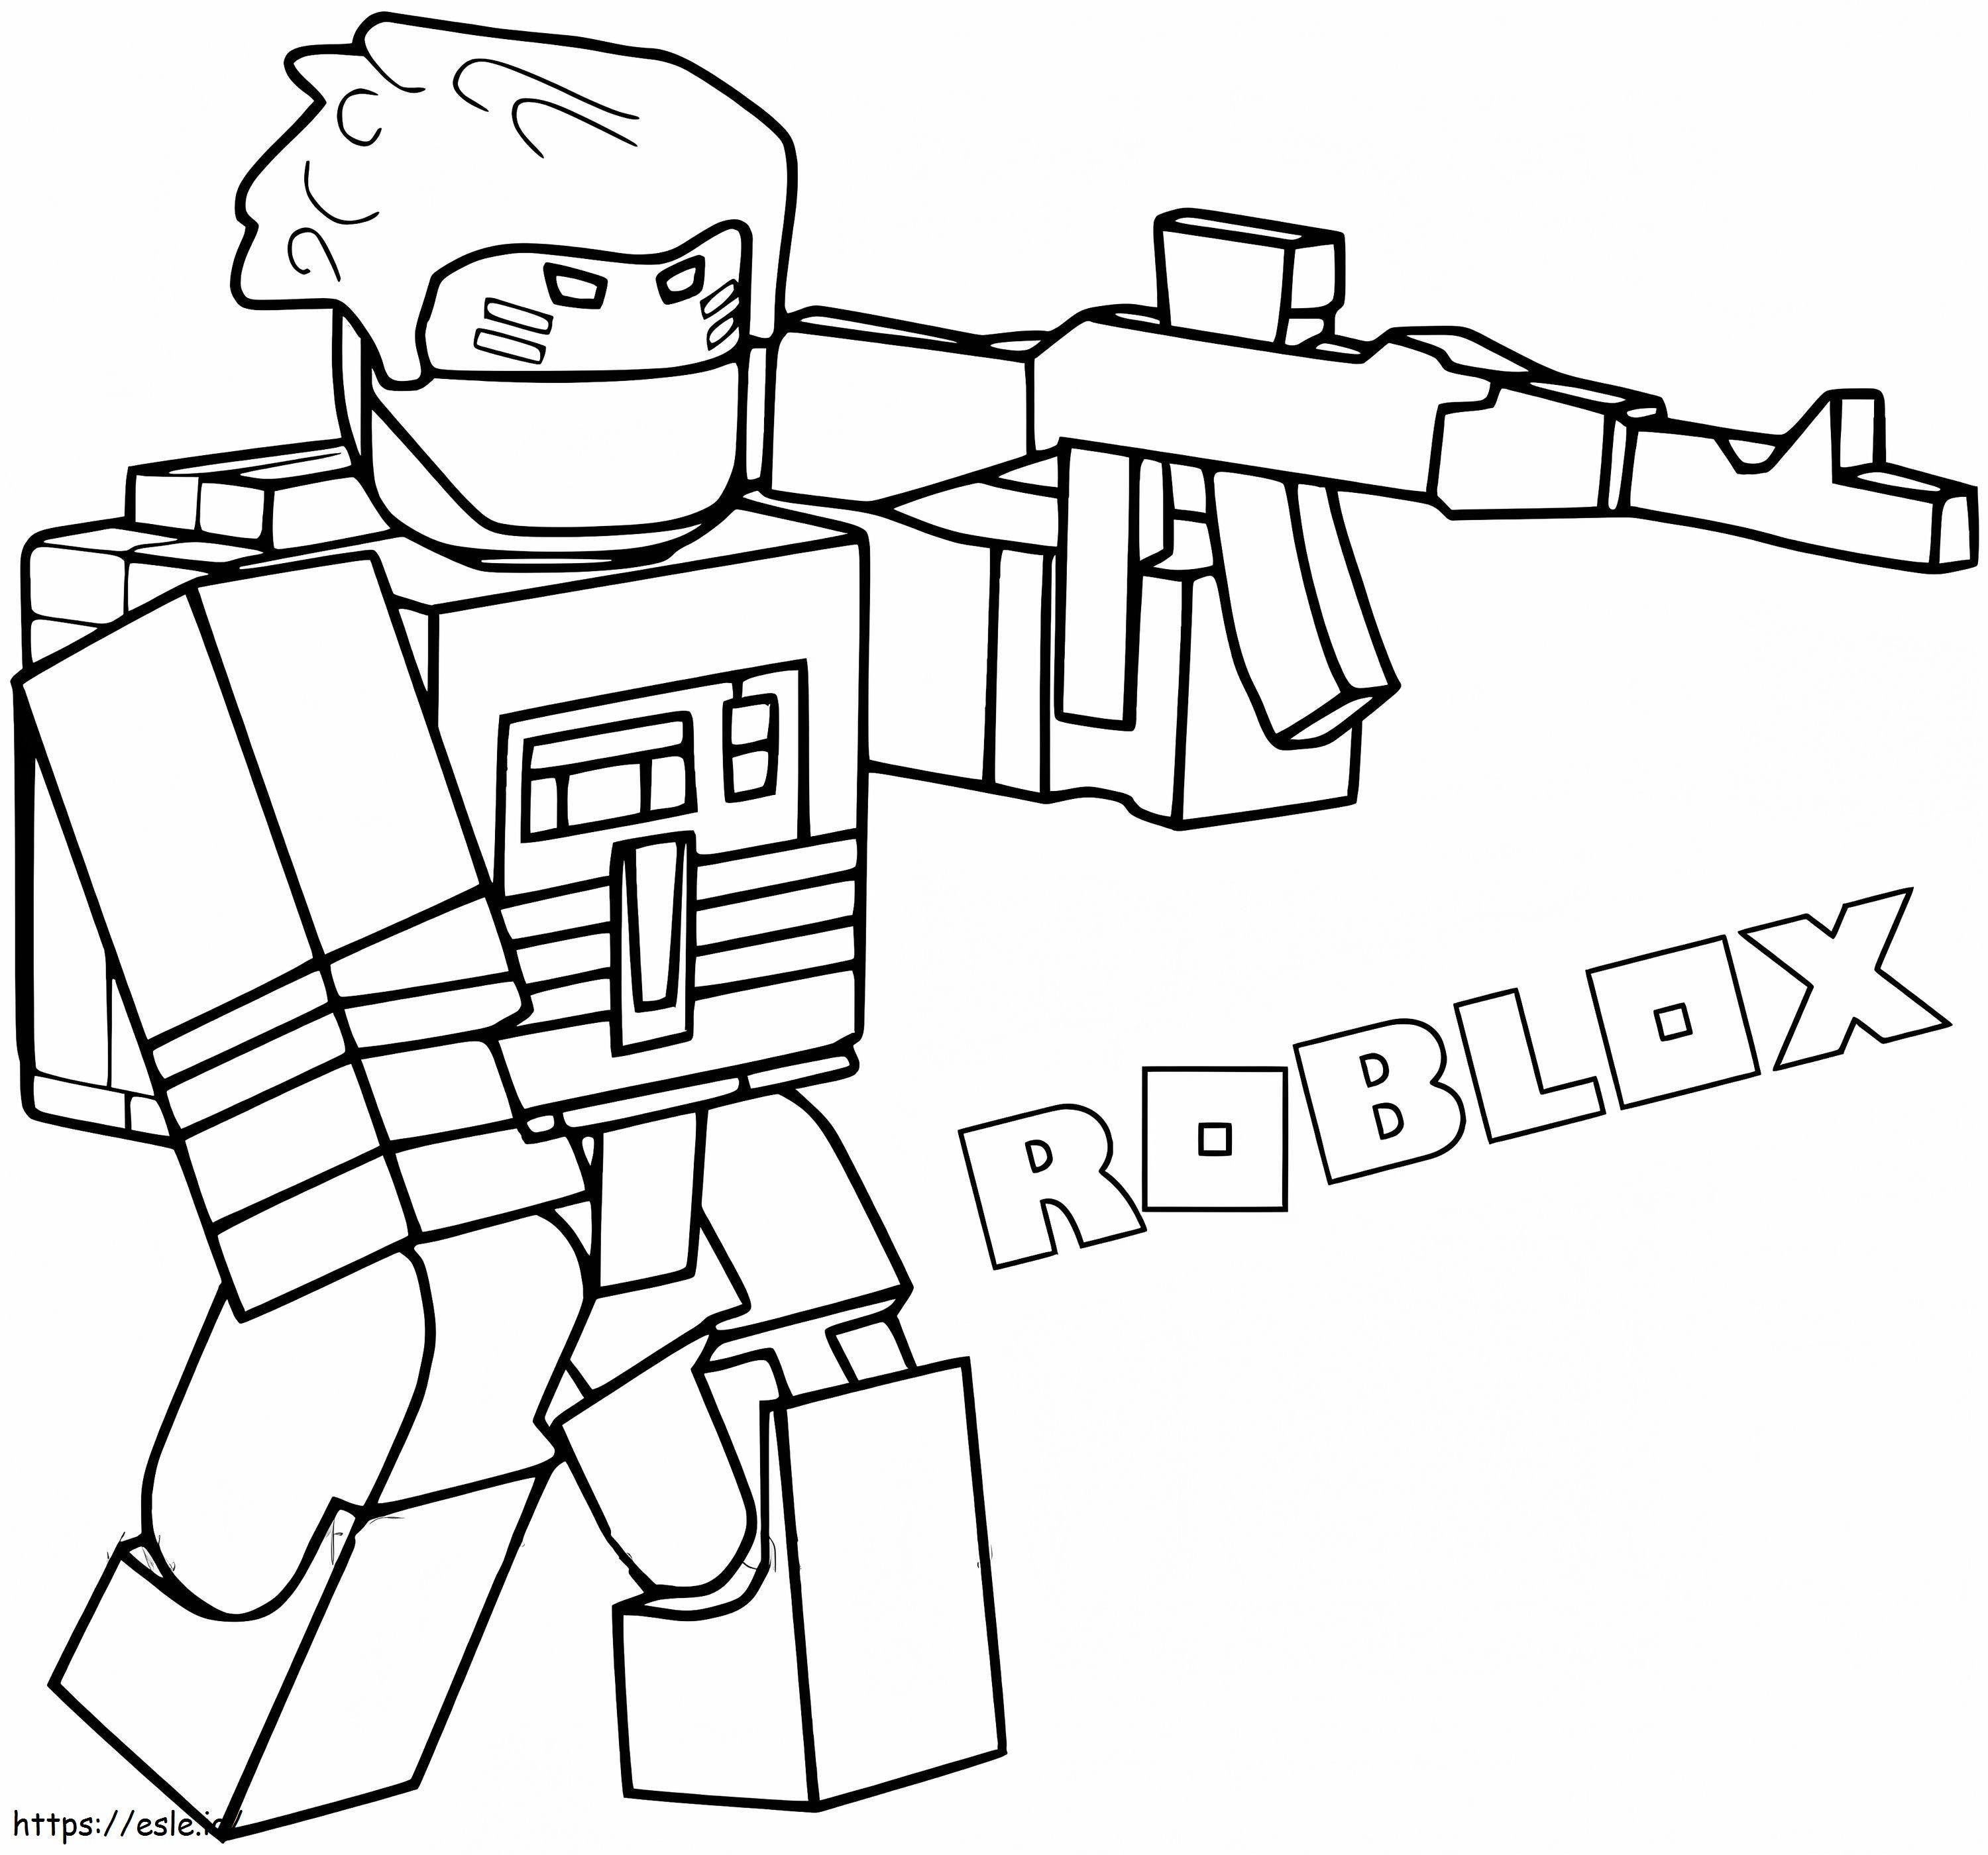 銃を持つ Roblox キャラクター ぬりえ - 塗り絵